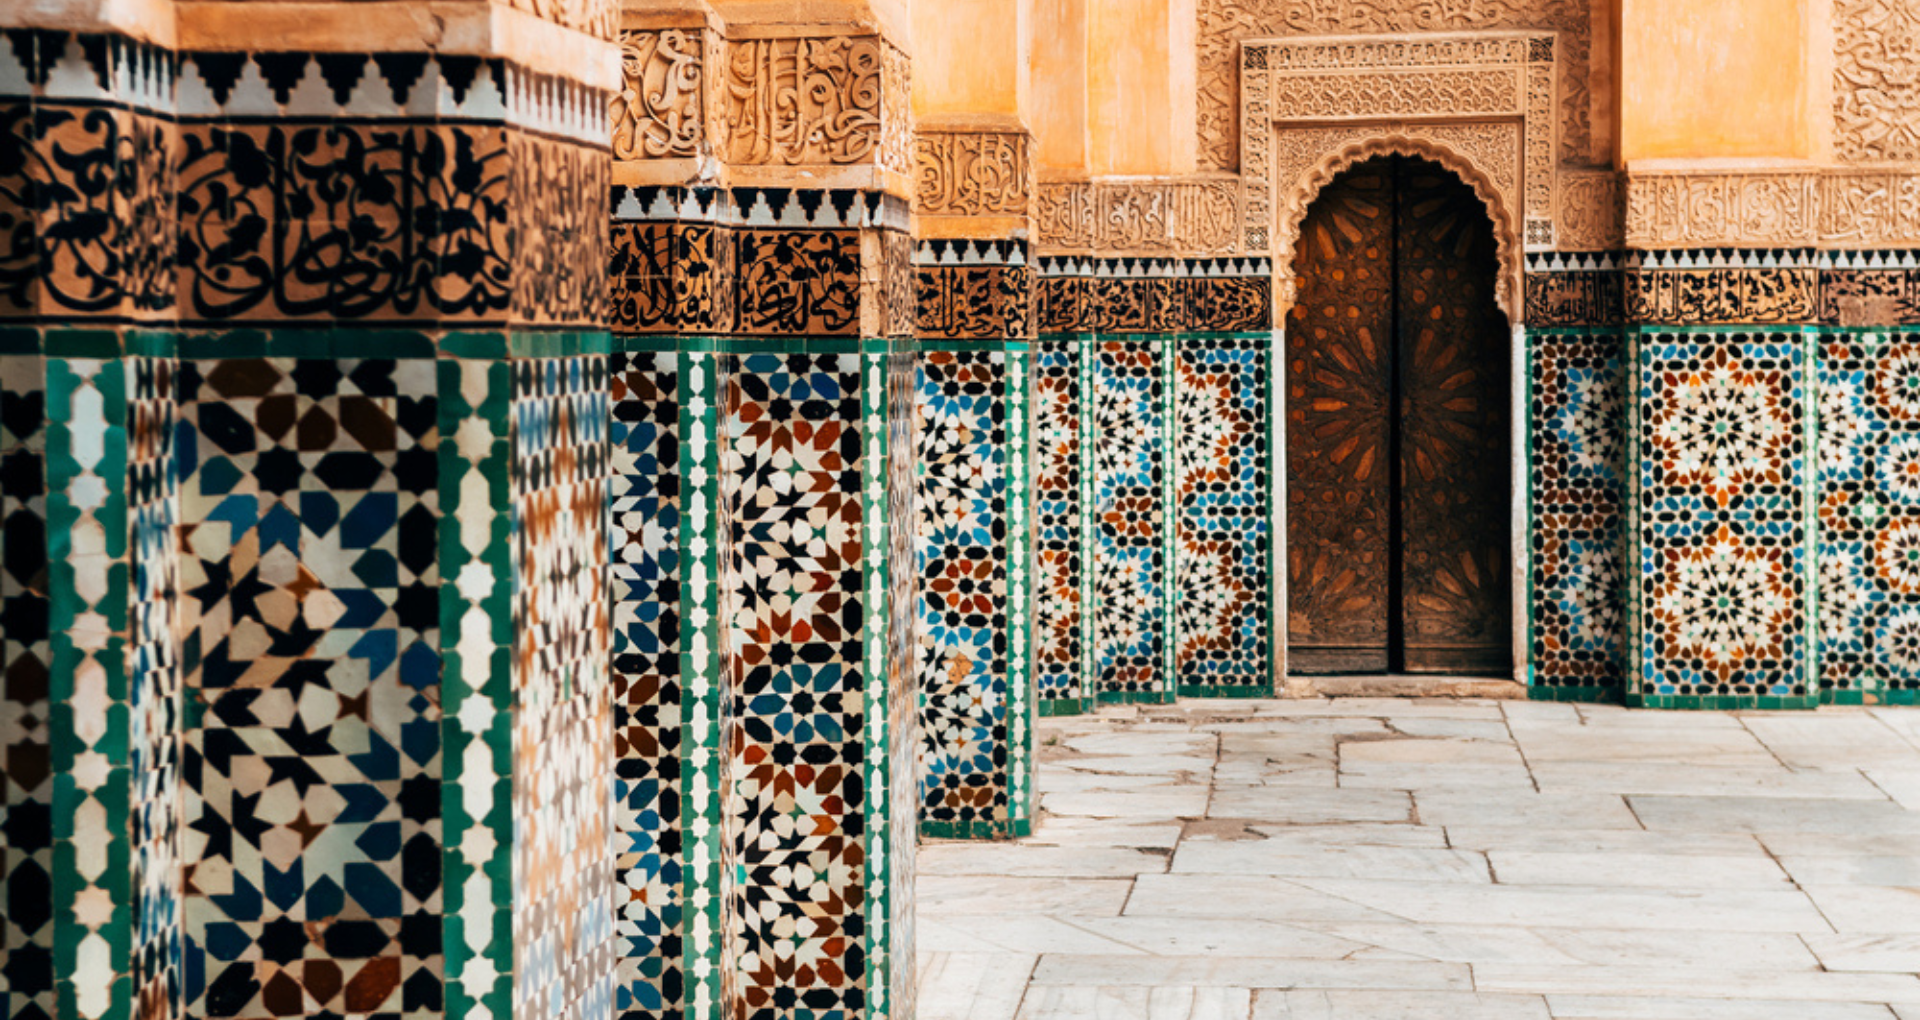 carreaux ornementaux colorés dans la cour marocaine, Marrakech